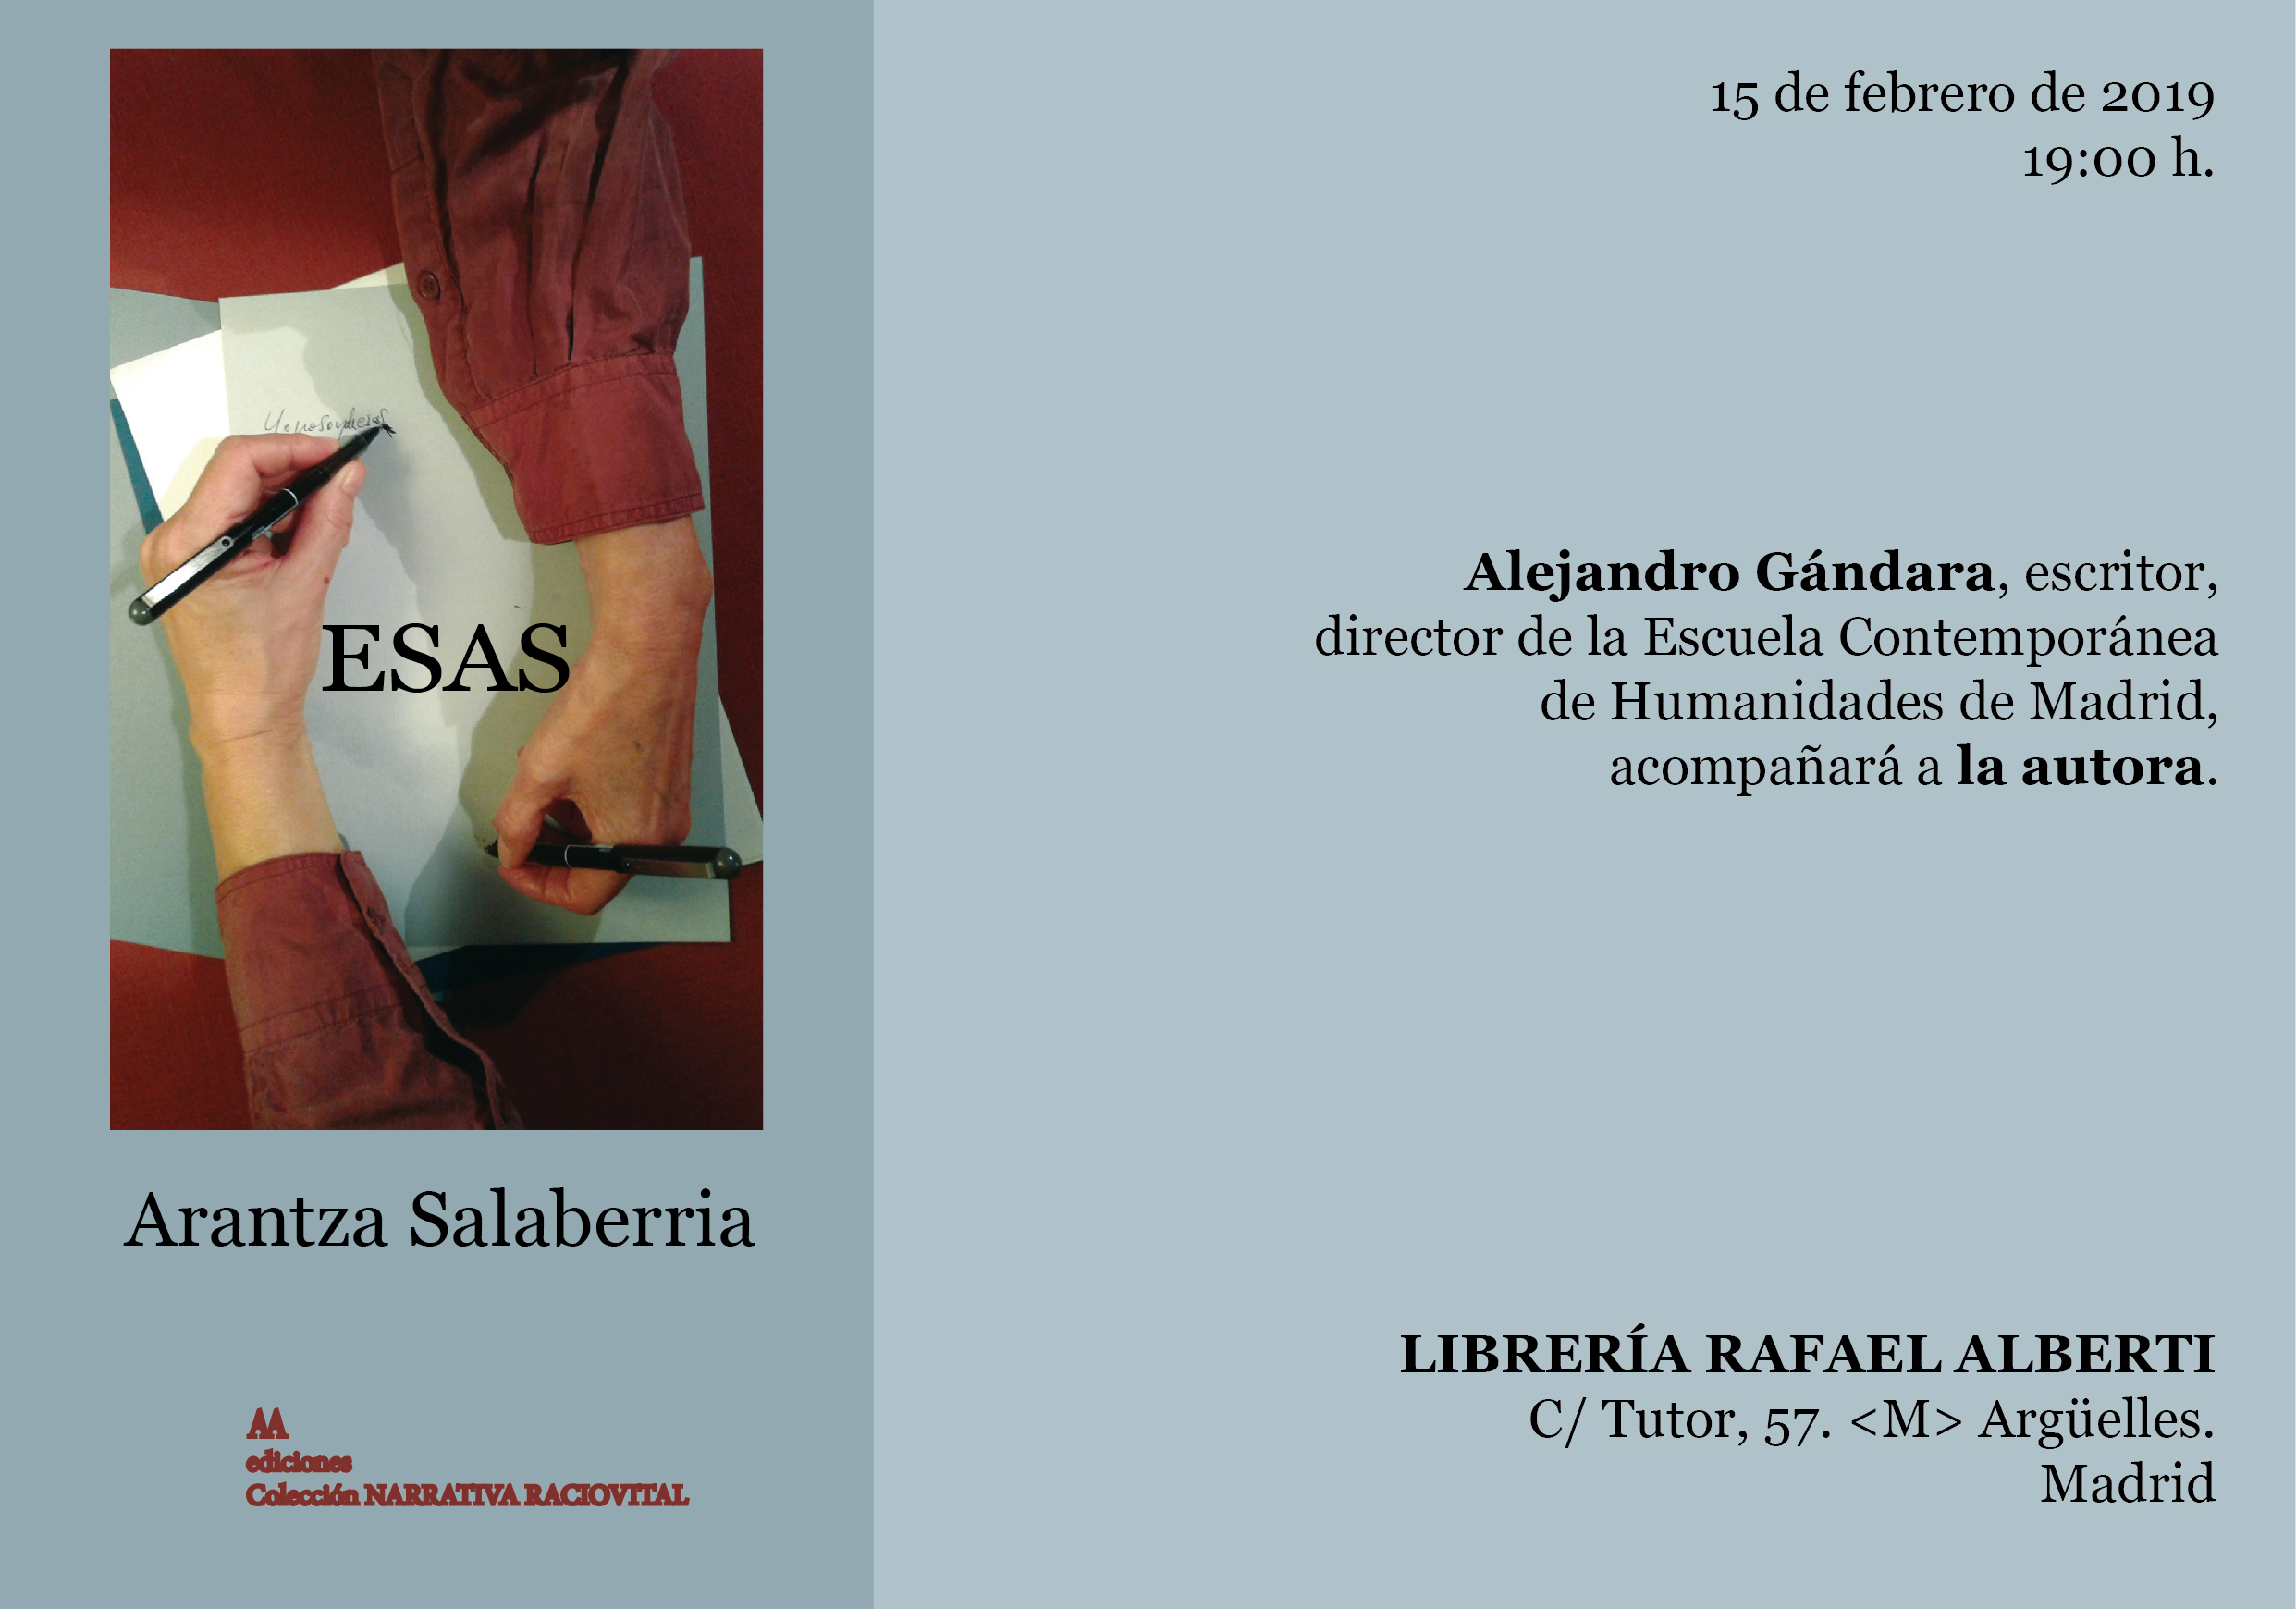 ARANTZA SALABERRIA. ESAS (Arte Activo Ediciones)